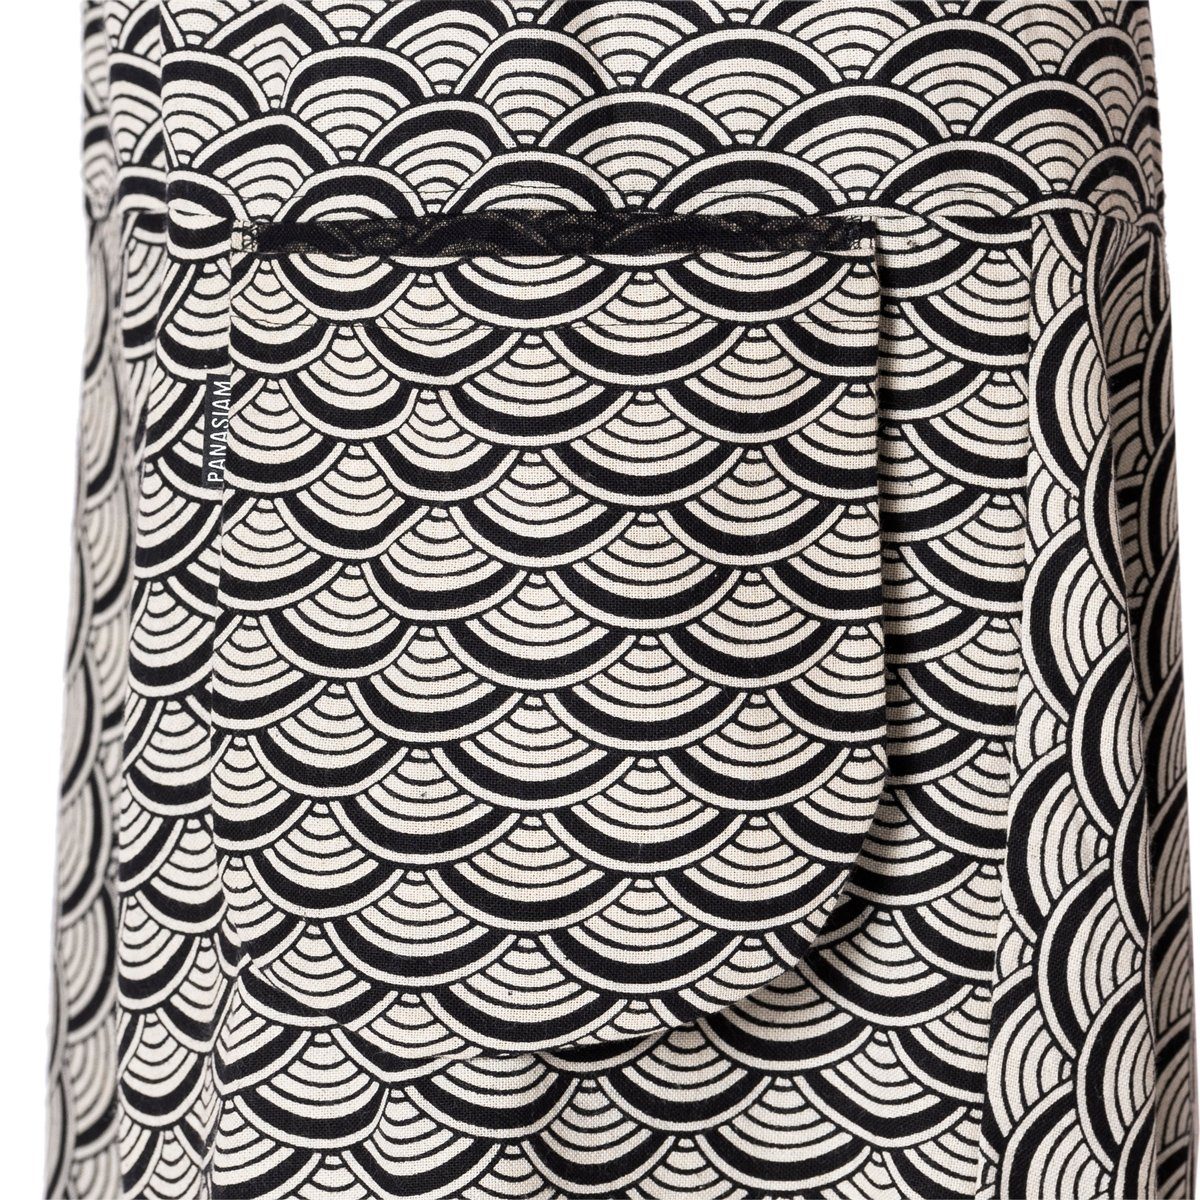 PANASIAM Relaxhose Aladinhose bequeme Seigaiha aus Mustern mit Pumphose grau 100% Baumwolle japanischen Geometrix bedruckt Freizeithose Damen gewebter grob Haremshose